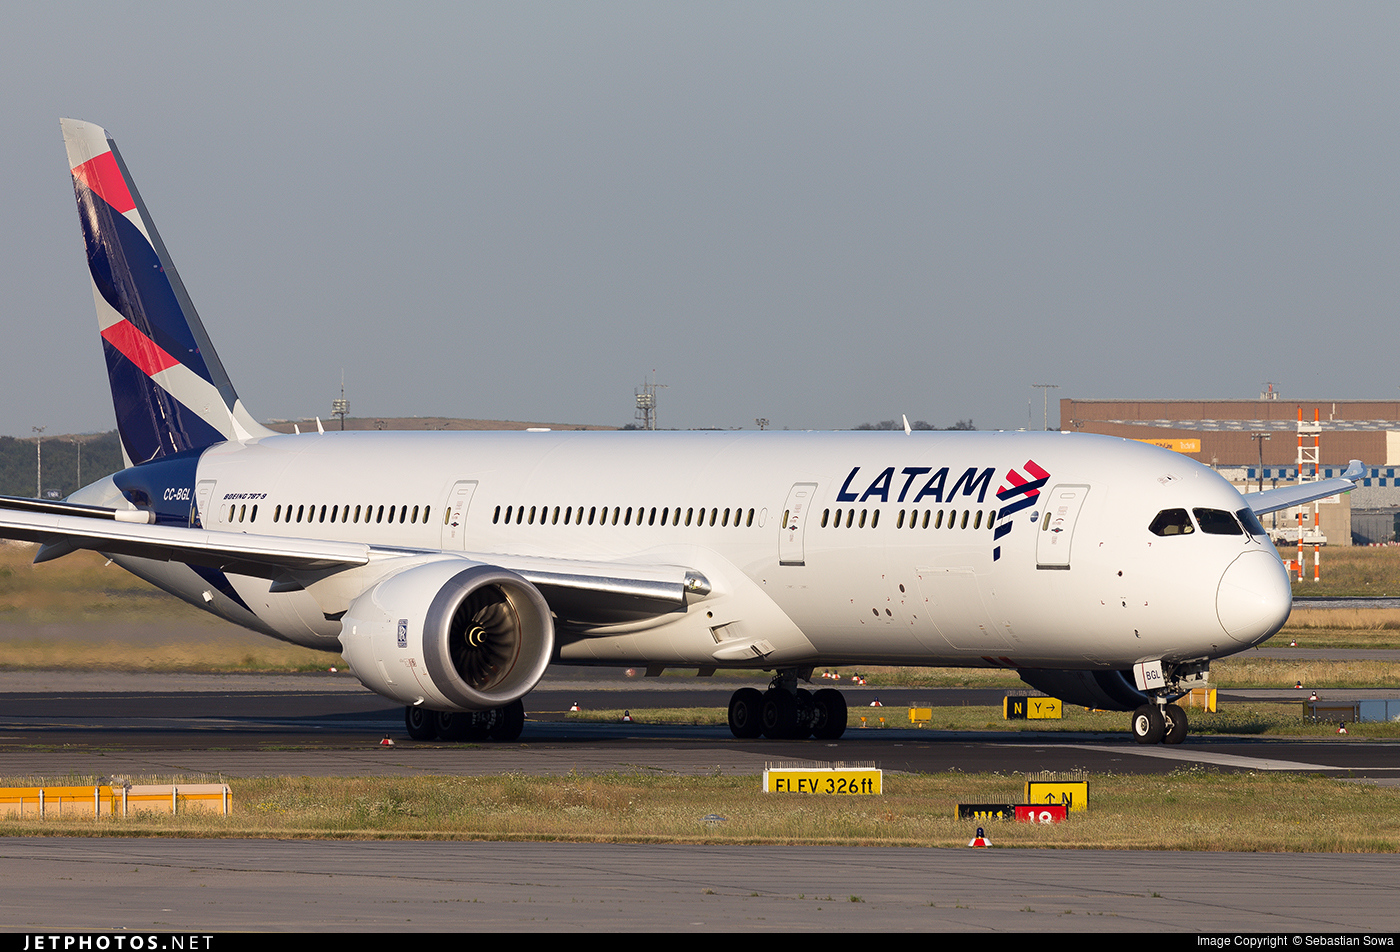 LATAM incrementará sus vuelos entre Sao Paulo y Madrid - Foro Aviones, Aeropuertos y Líneas Aéreas